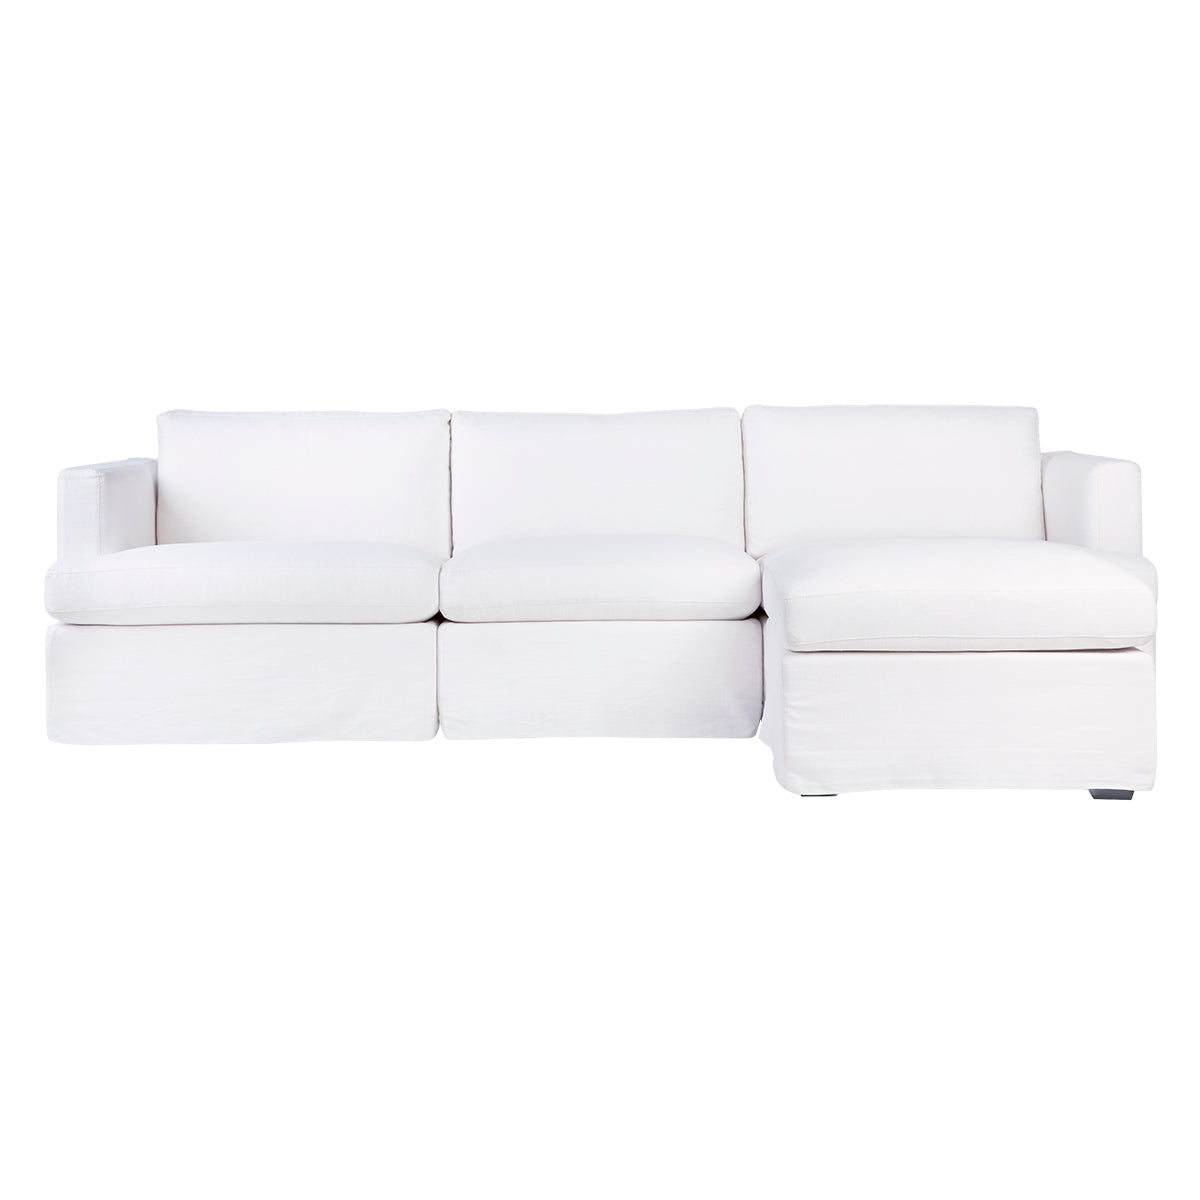 Birkshire Slip Cover Modular Sofa - White Linen Option 6